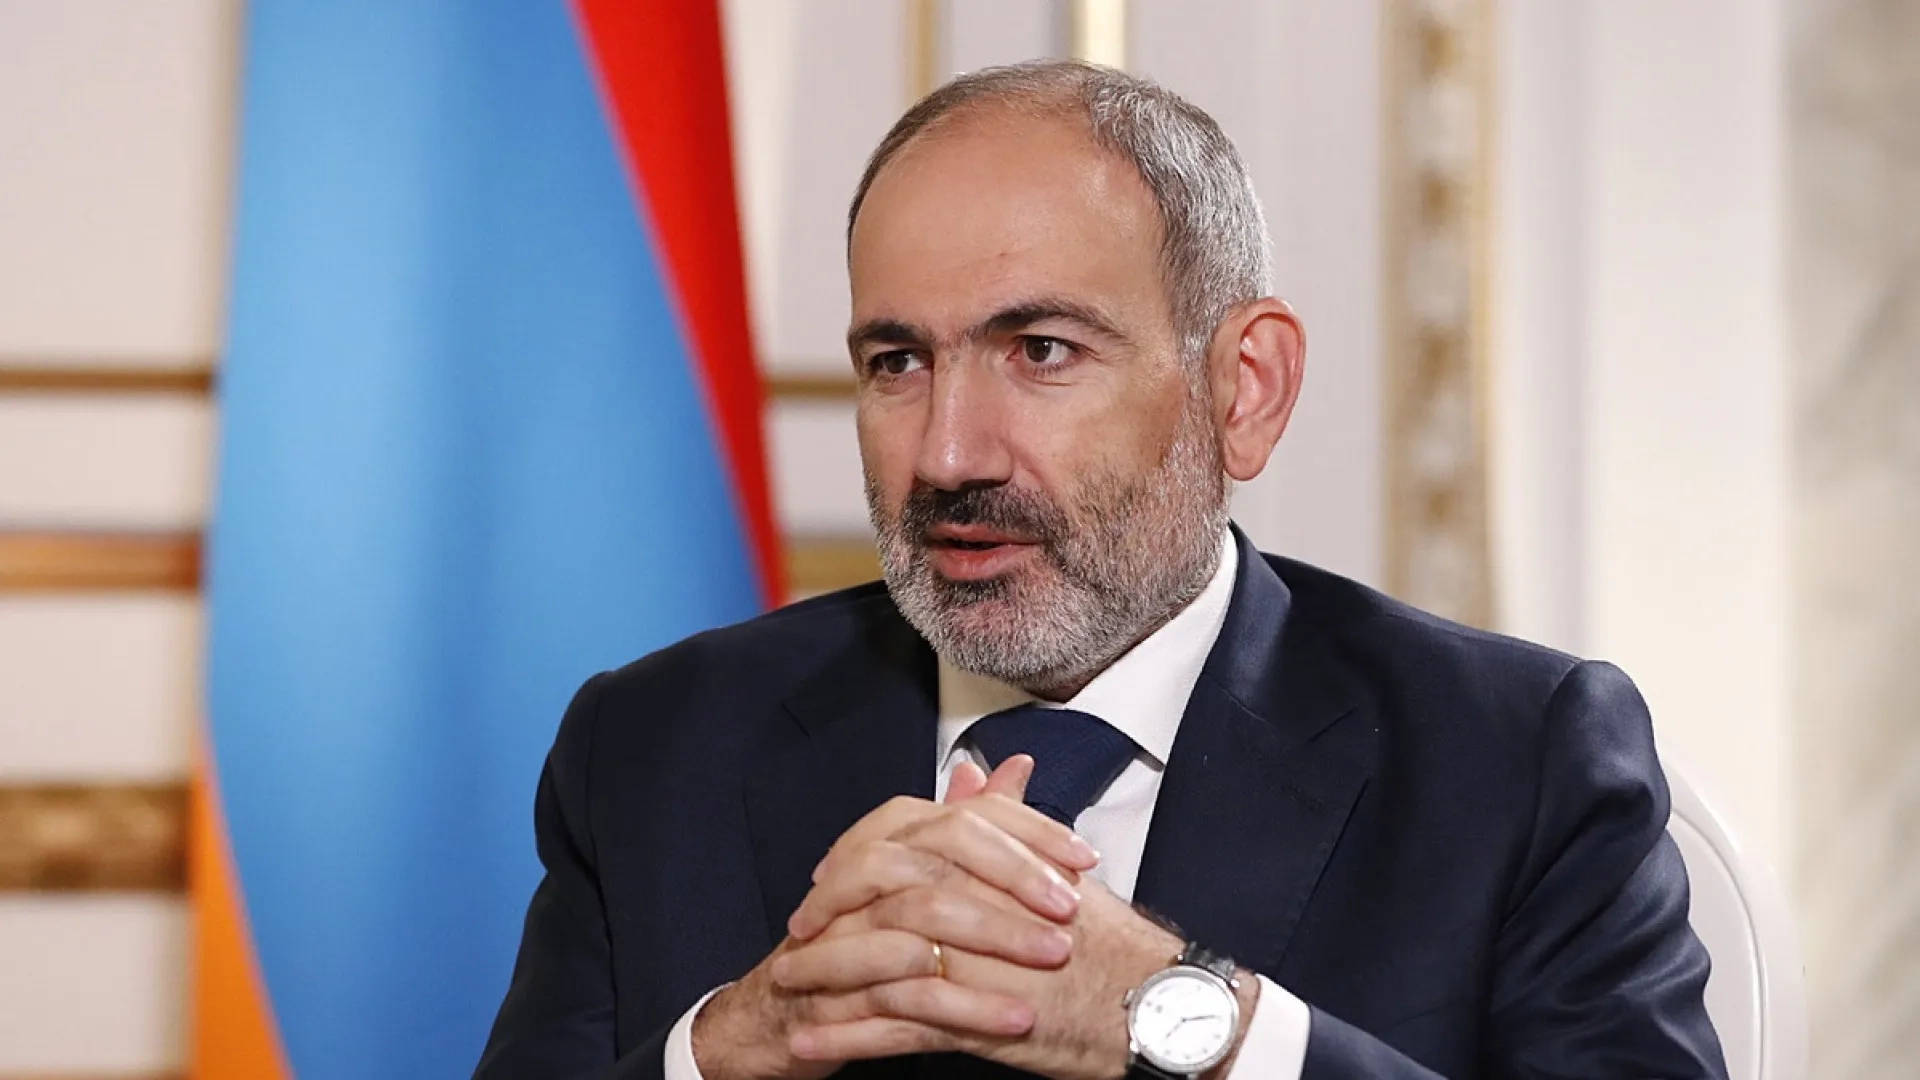 Пашинян: Баку и Ереван начали практический процесс по делимитации границы